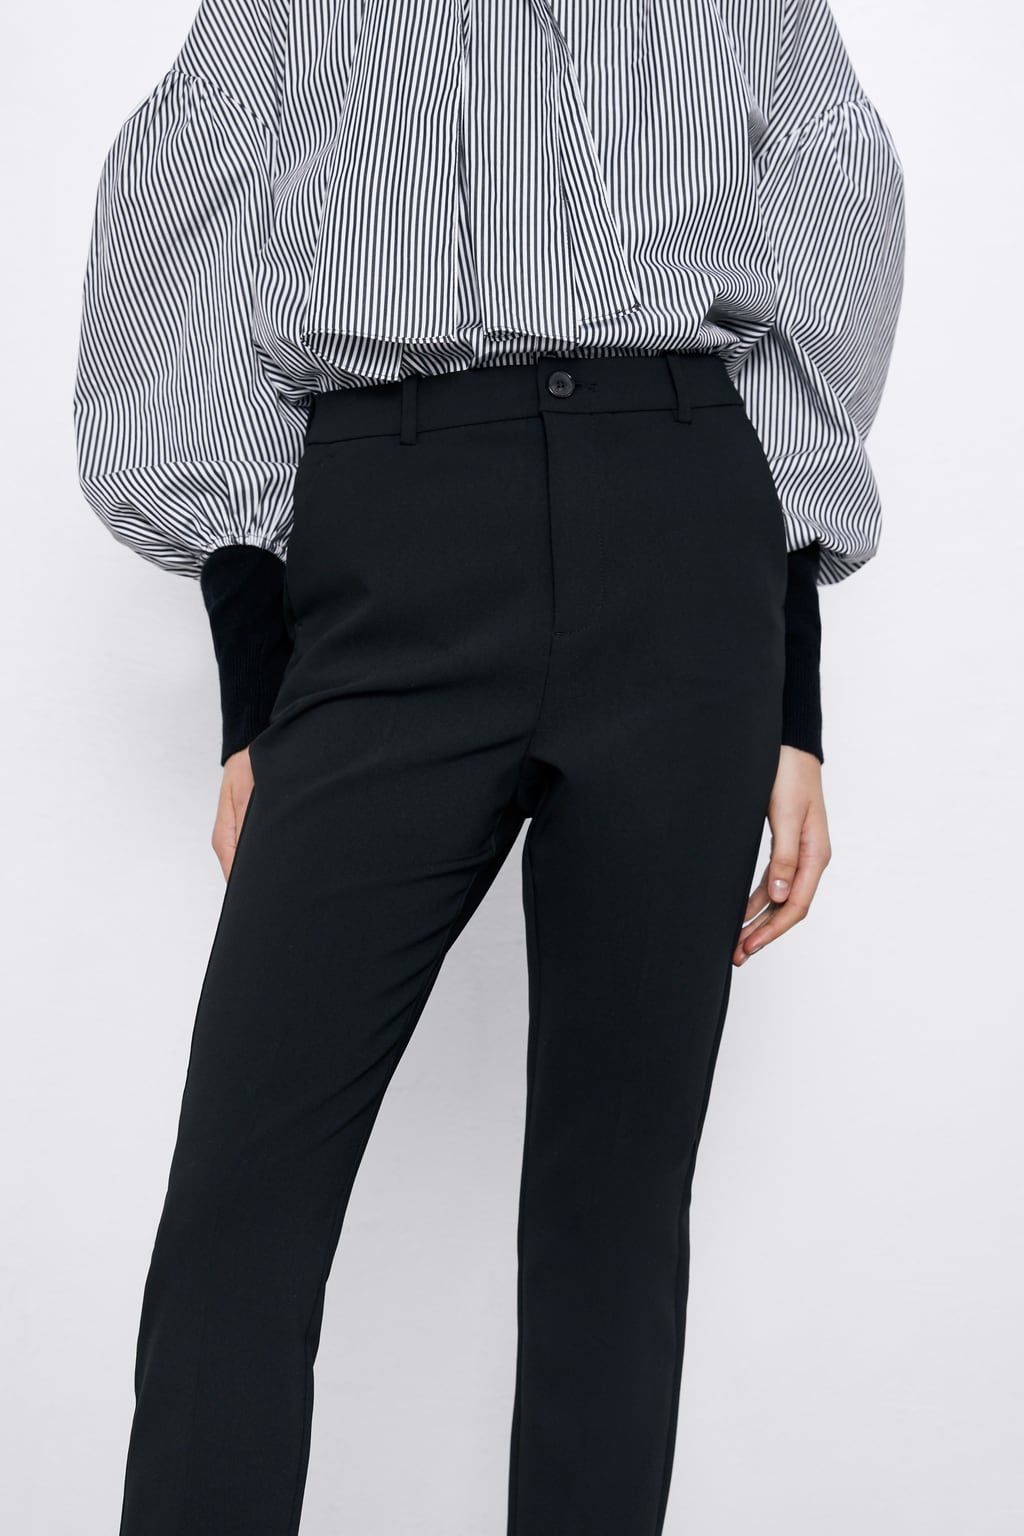 En Zara Crean El Pantalon De Vestir Negro Que Reduce Una Talla